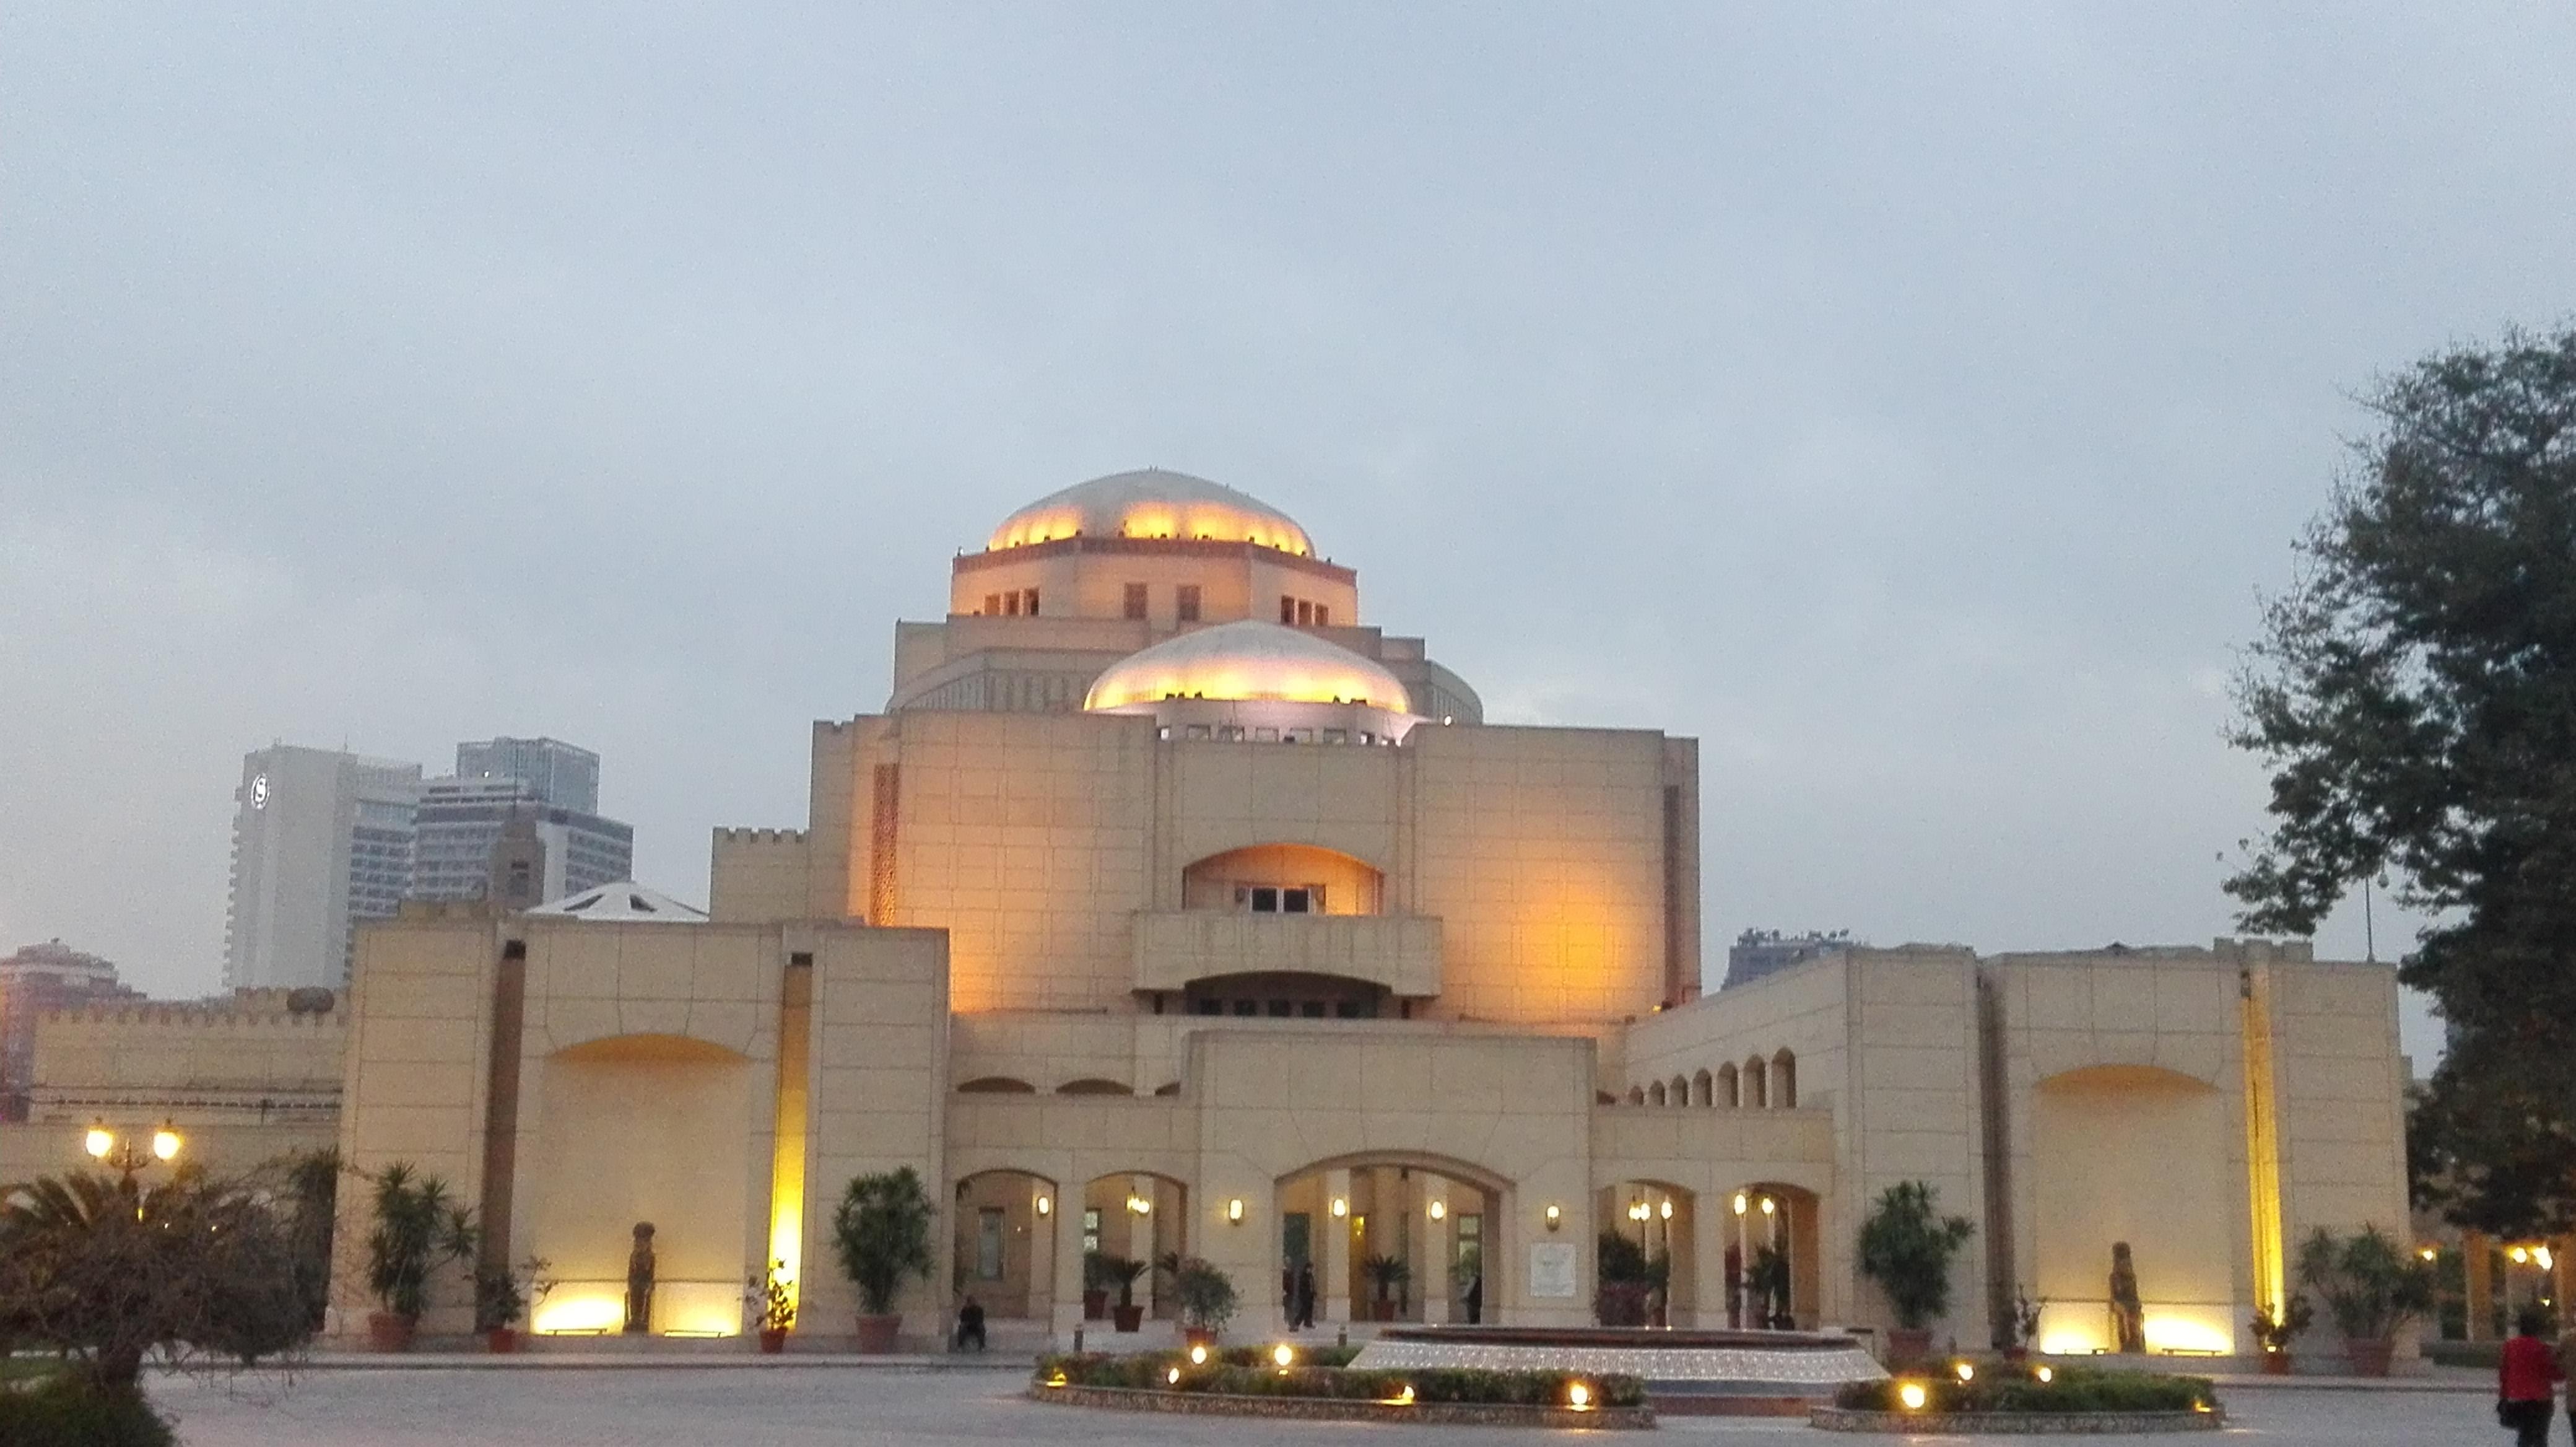 Explore the Cairo Opera House